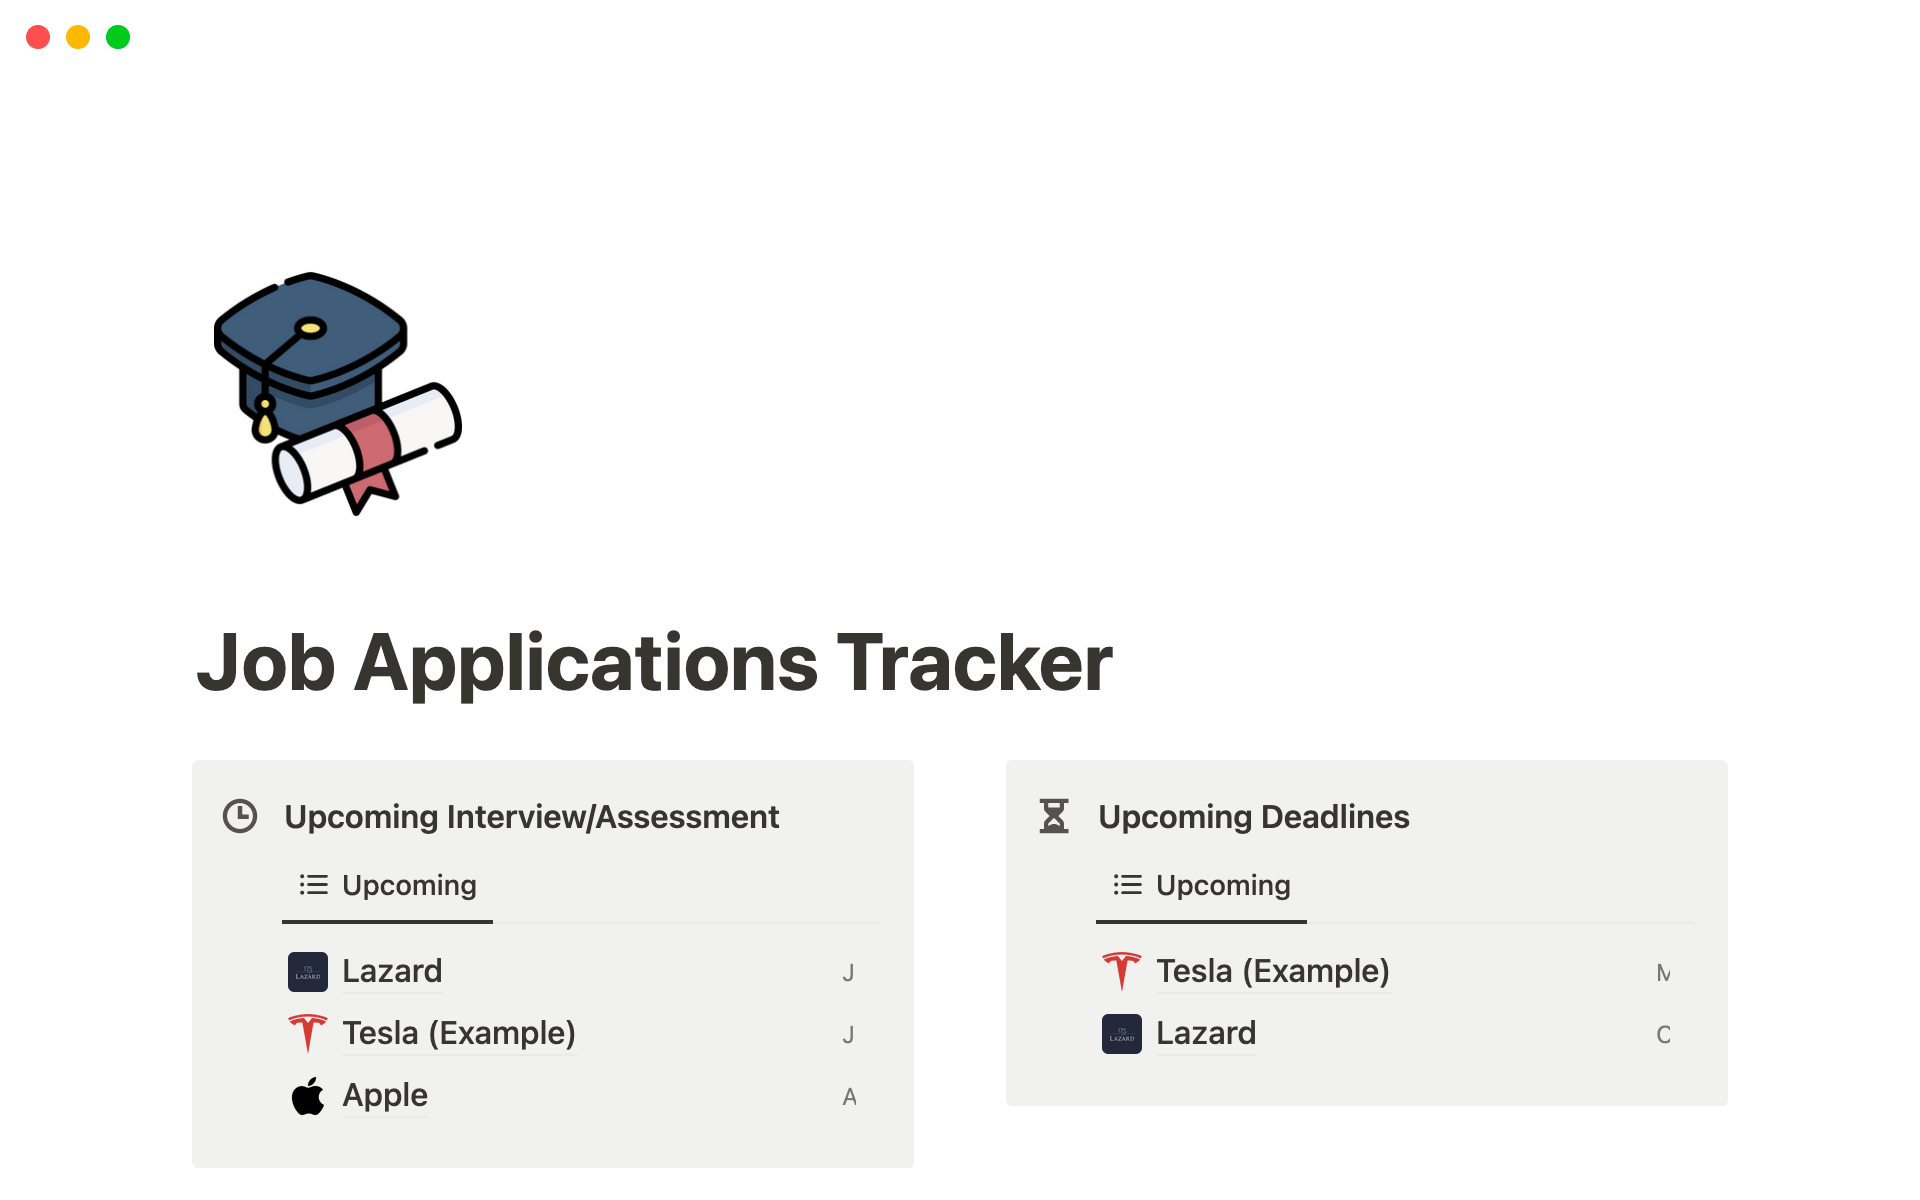 Uma prévia do modelo para Job Applications Tracker